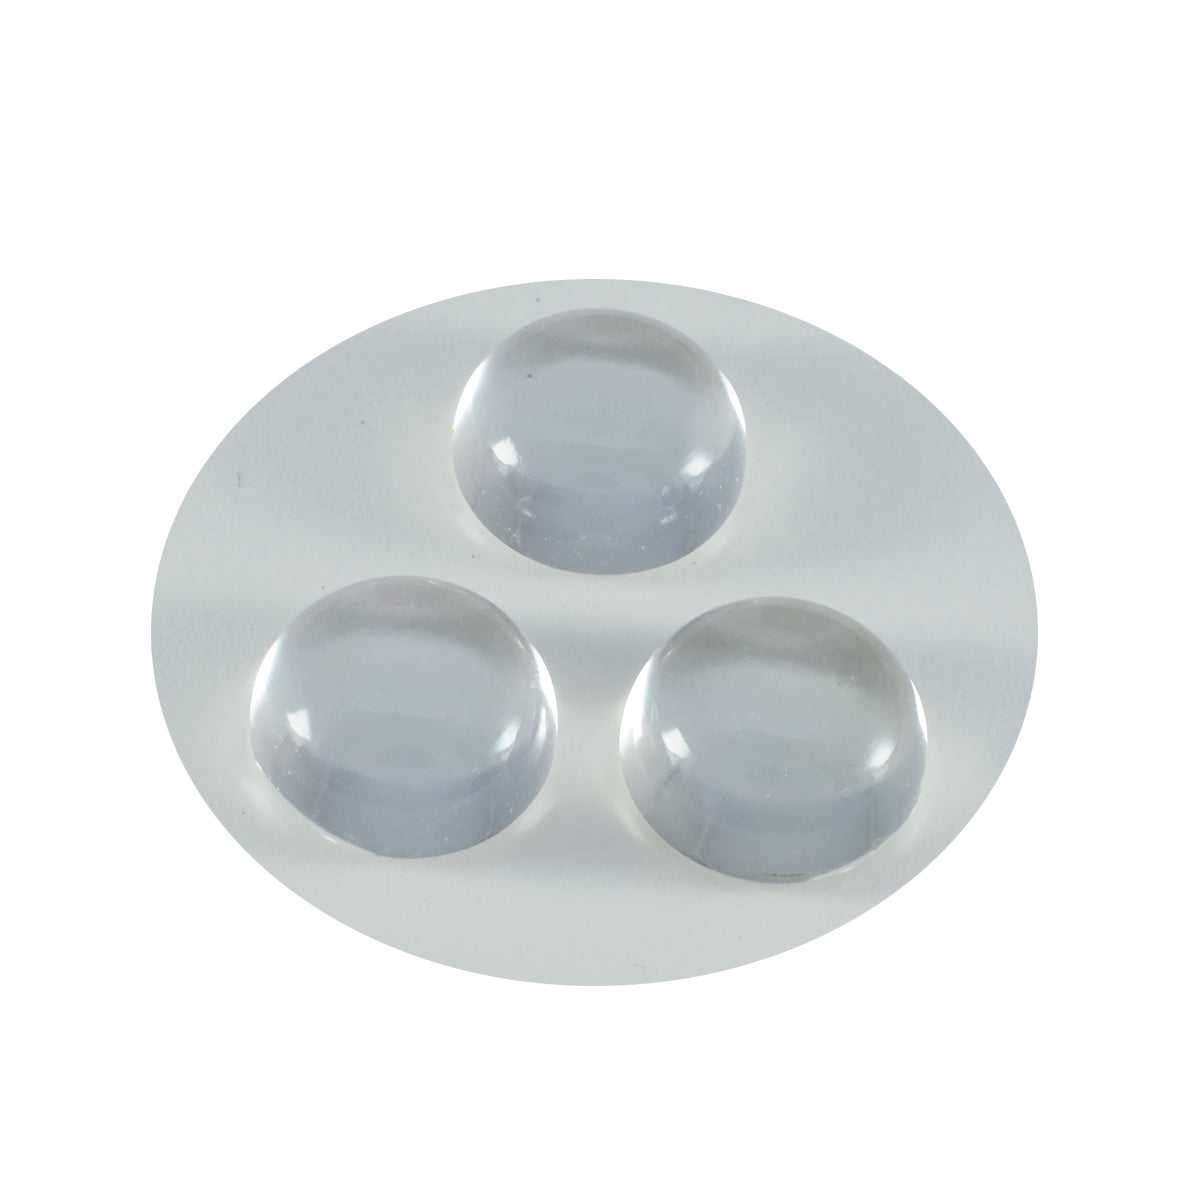 Riyogems 1PC witte kristalkwarts cabochon 11x11 mm ronde vorm mooie kwaliteit losse edelsteen